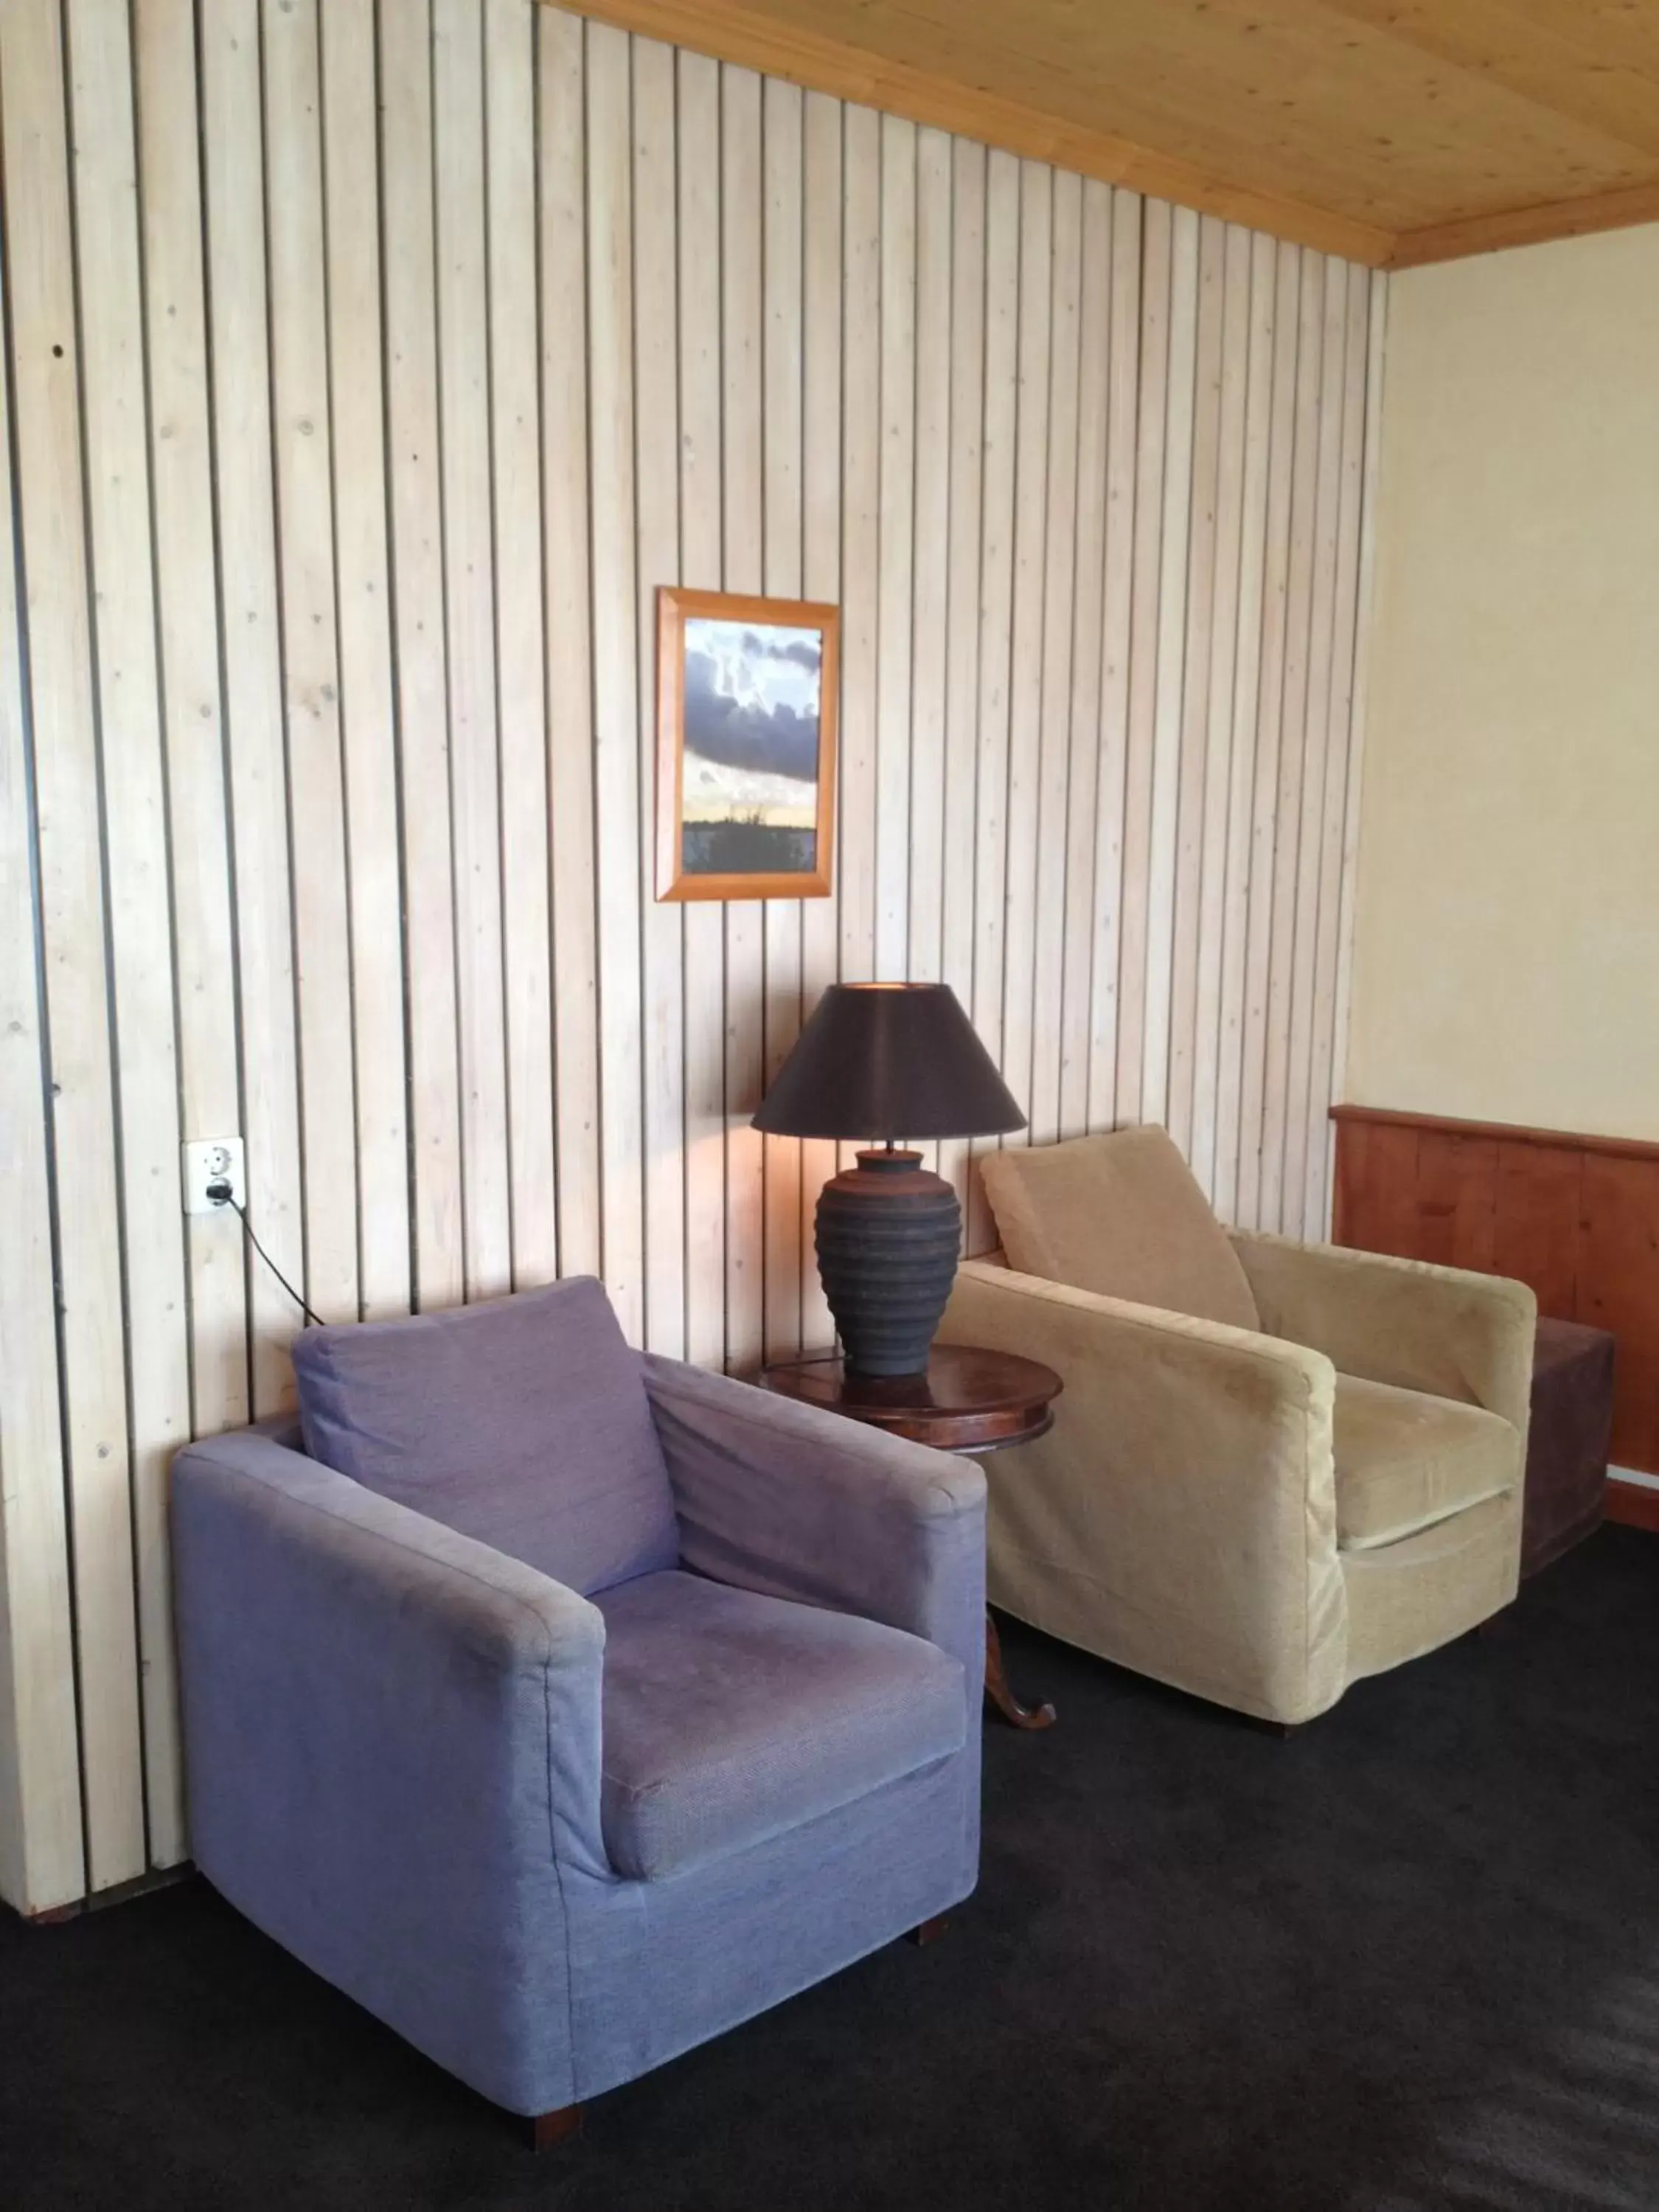 Seating Area in Restaurant-Hotel de Watergeus